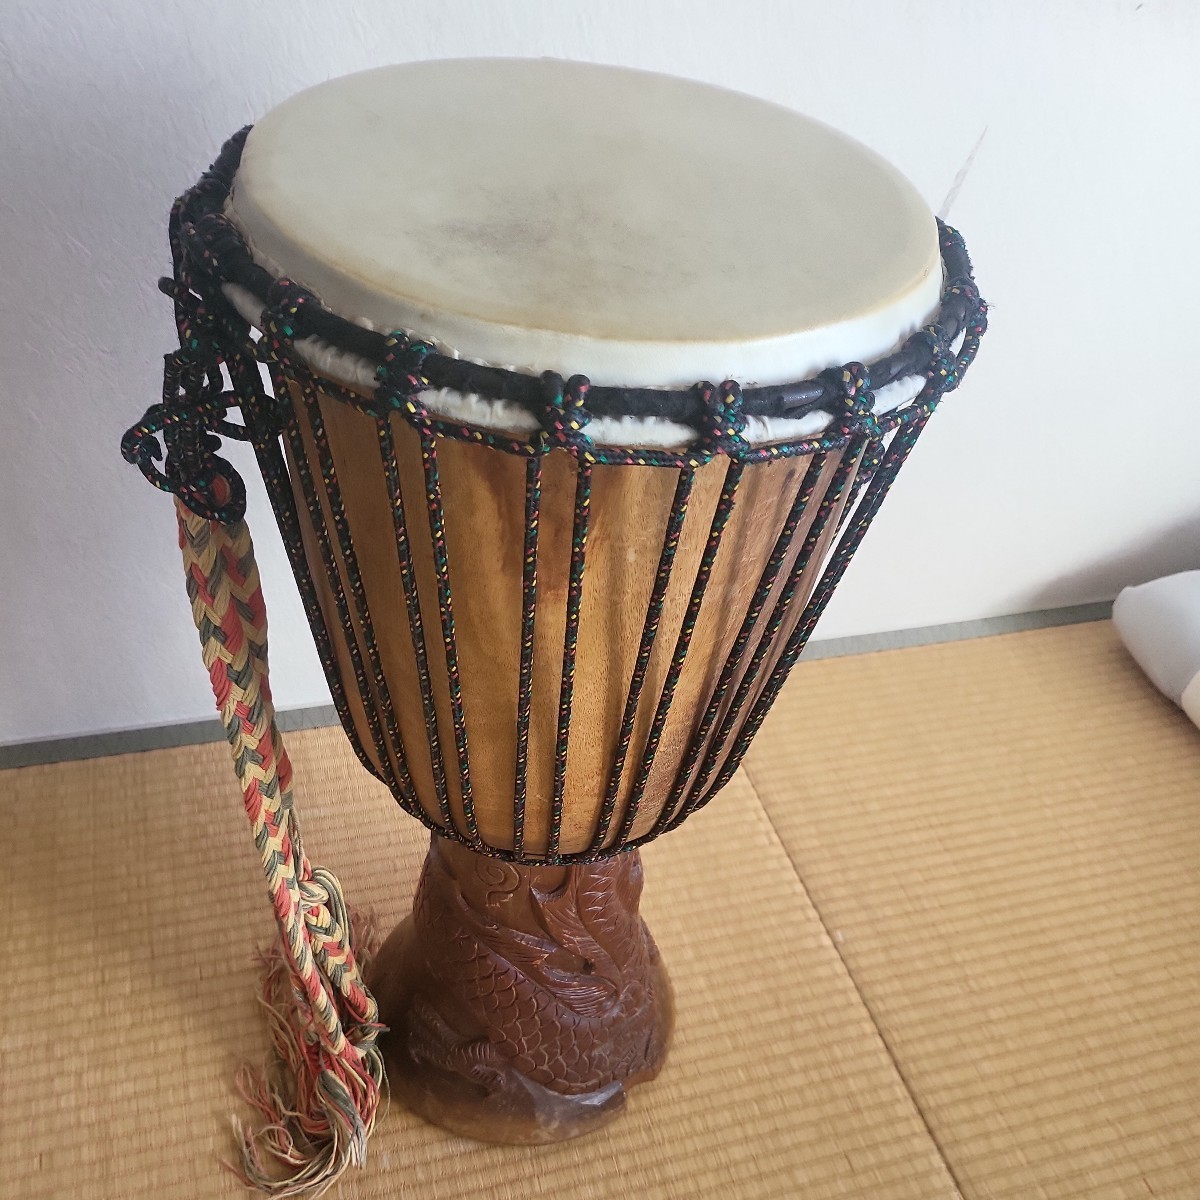  Africa этнический музыкальный инструмент ударные инструменты ударный инструмент Jean be высота примерно 60 см диаметр 30 см 